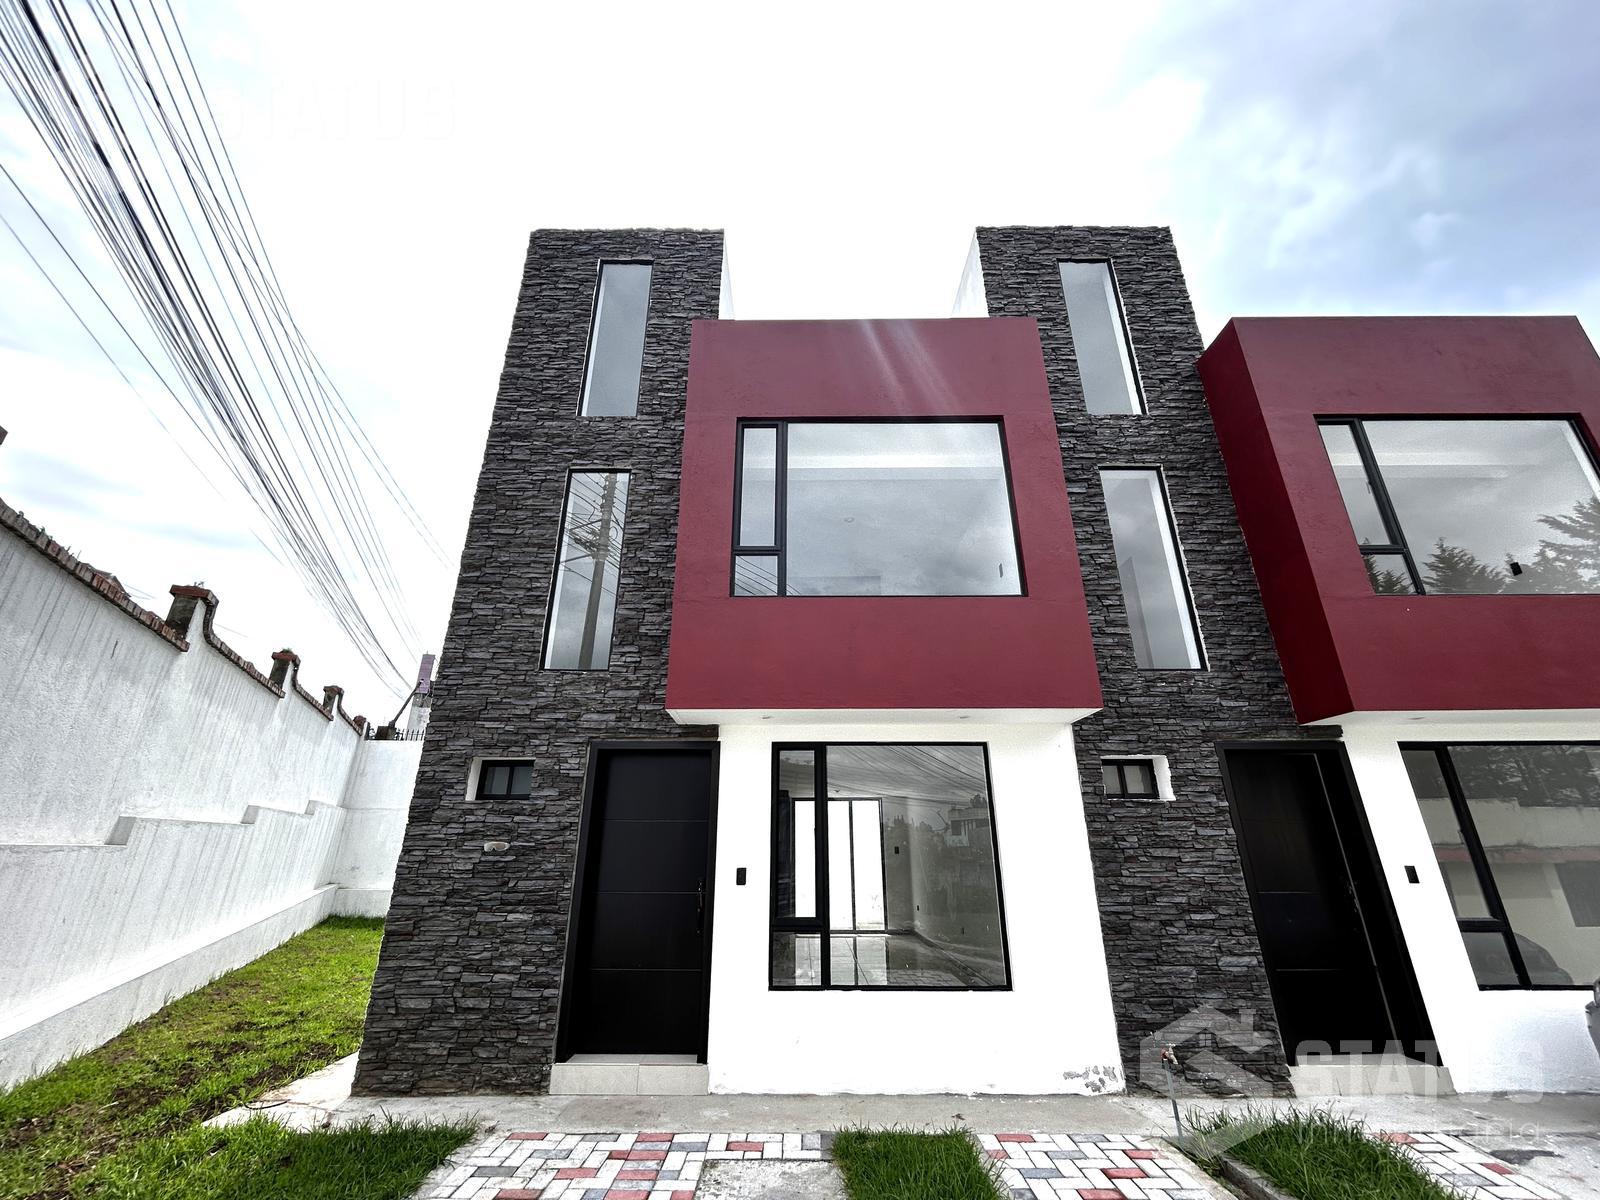 ¡Aplica crédito VIP! Vendo casa en conjunto 110 m, 3 Dorm., 1 Garaje, sector La Armenia II, $99.900